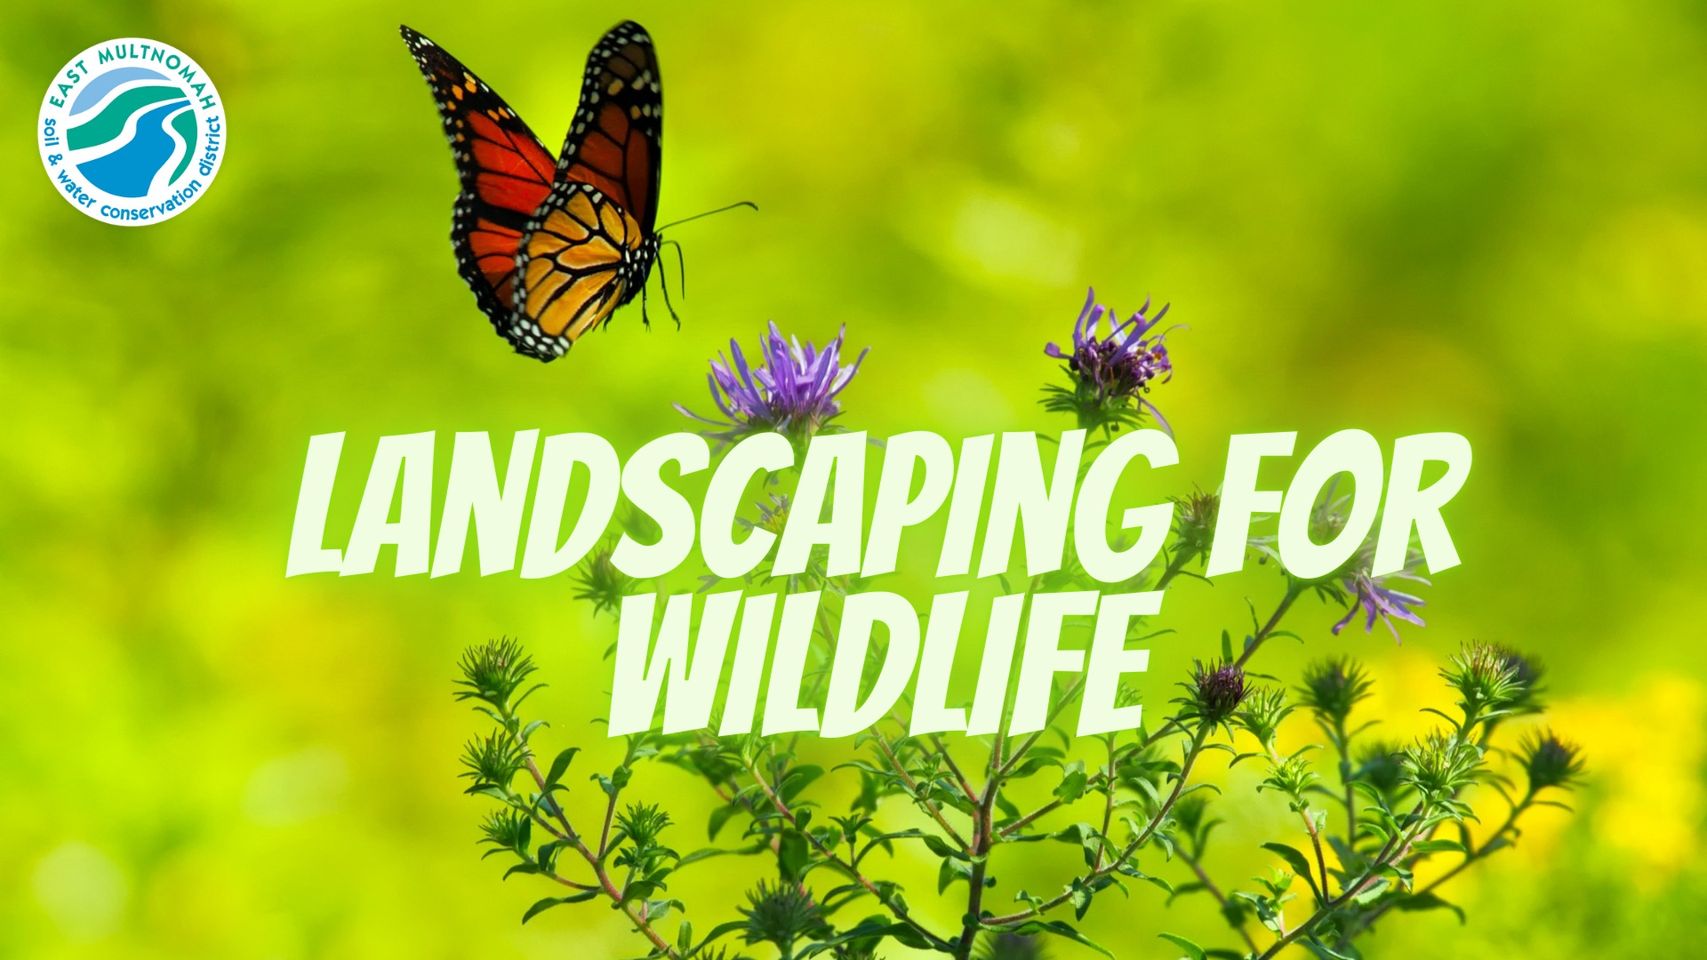 Landscaping for Wildlife workshop